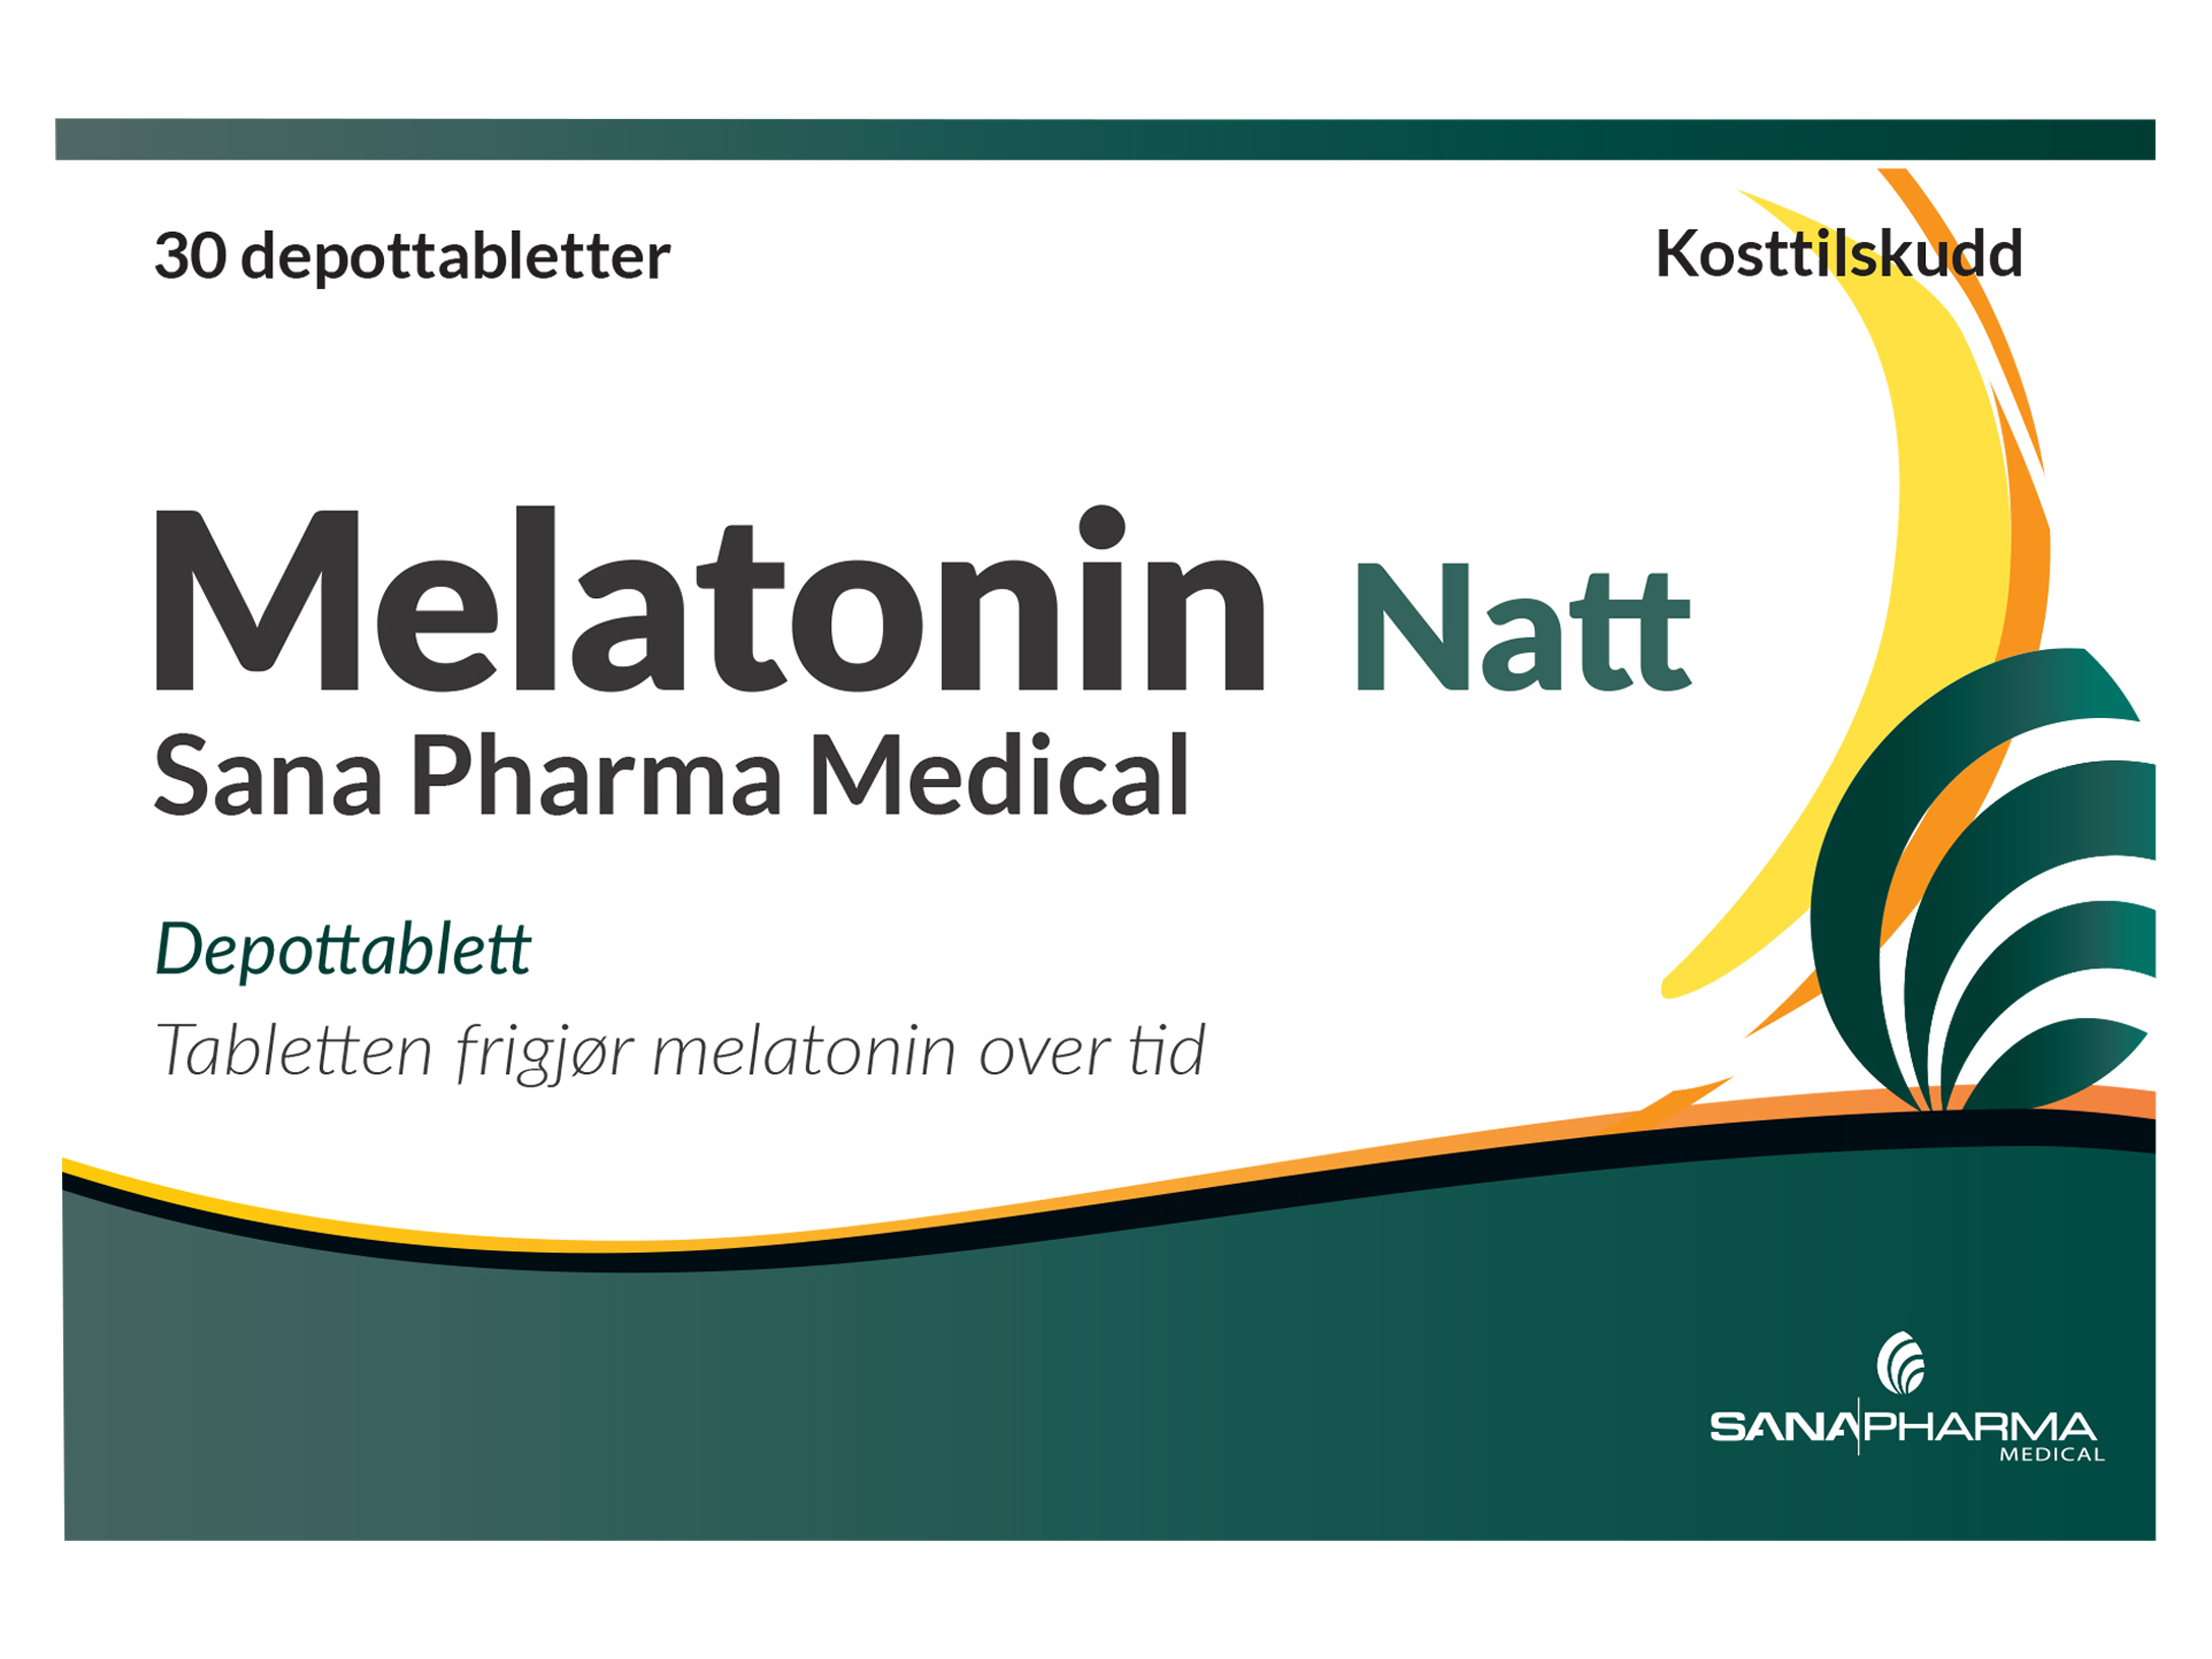 Sana Pharma Medical Melatonin Natt Depottablett 1 mg, 30 tabletter